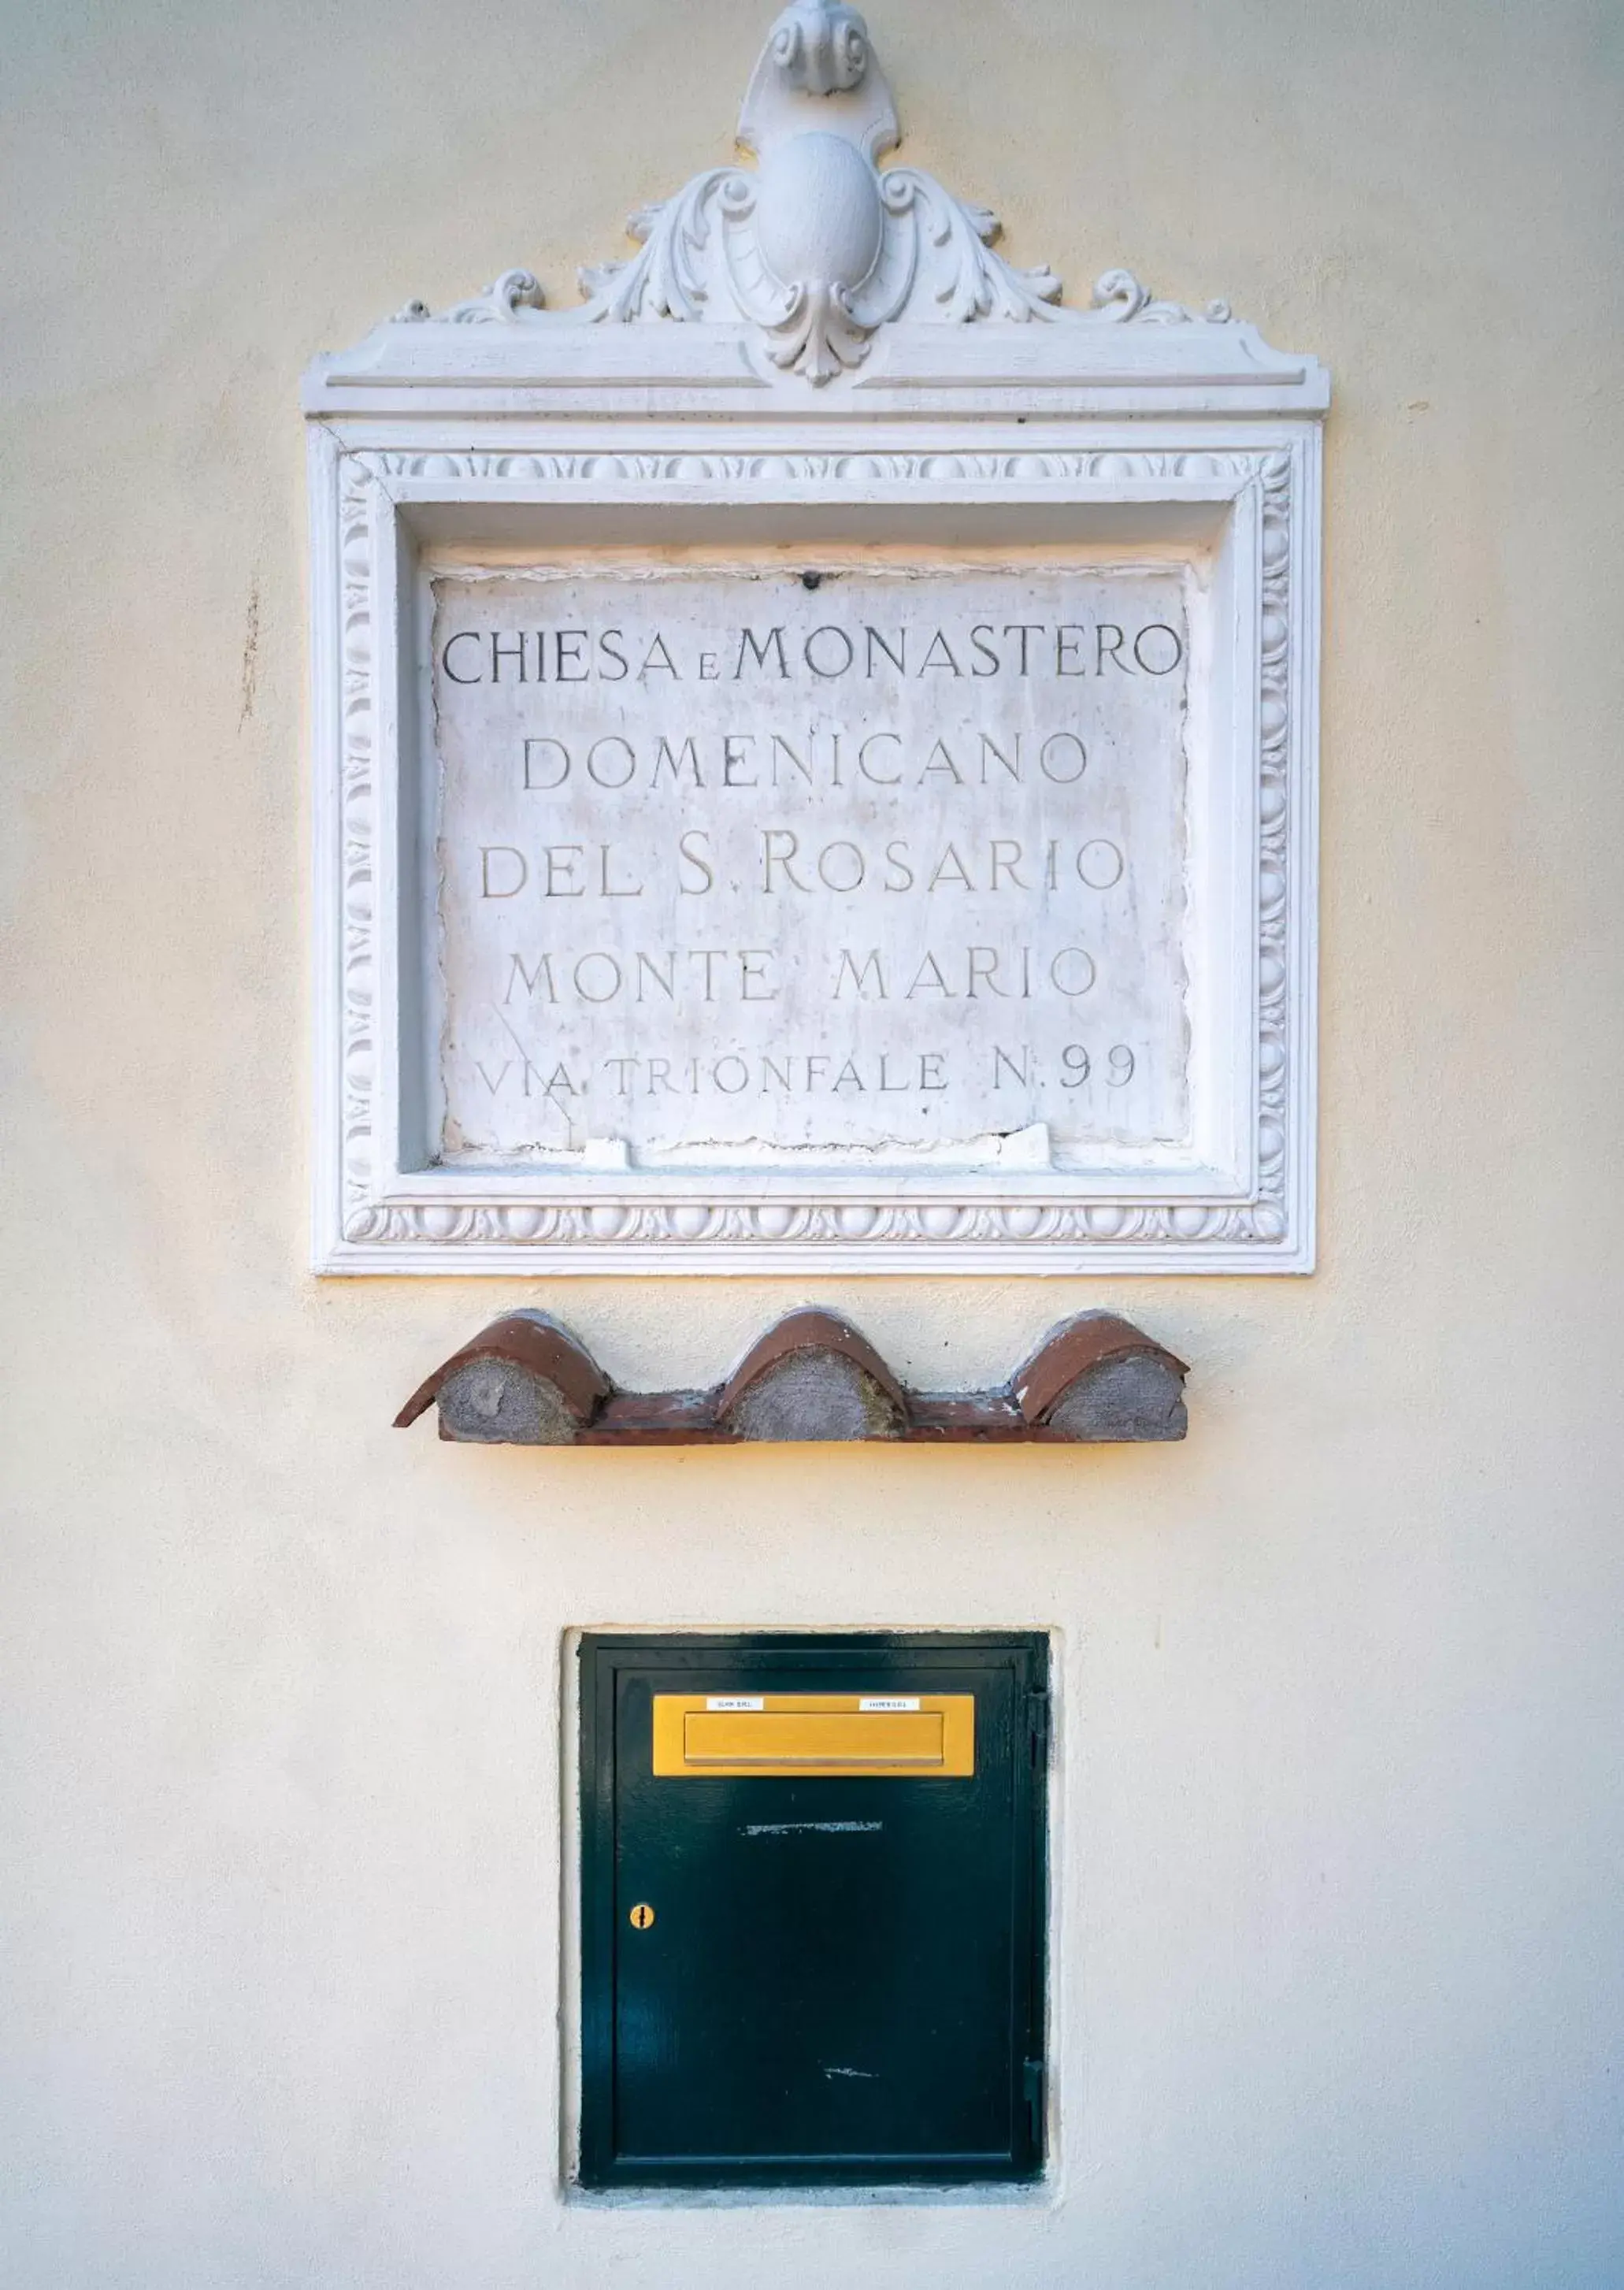 Logo/Certificate/Sign in Monastero dei Santi